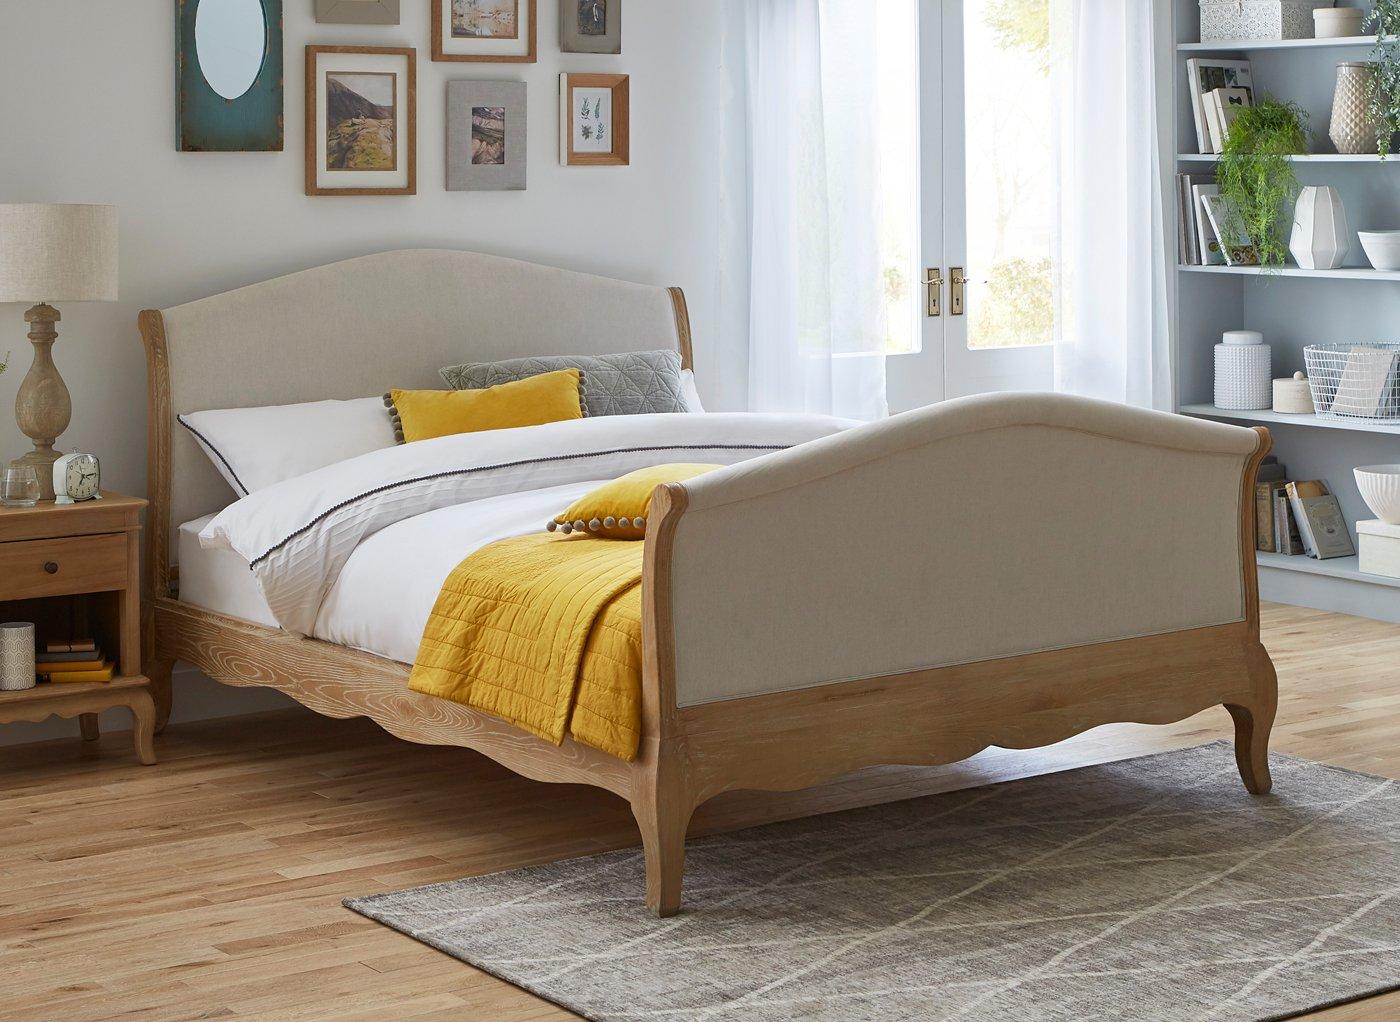 Bond Wooden High Footend Bed Frame 6 0, High Wooden Bed Frame